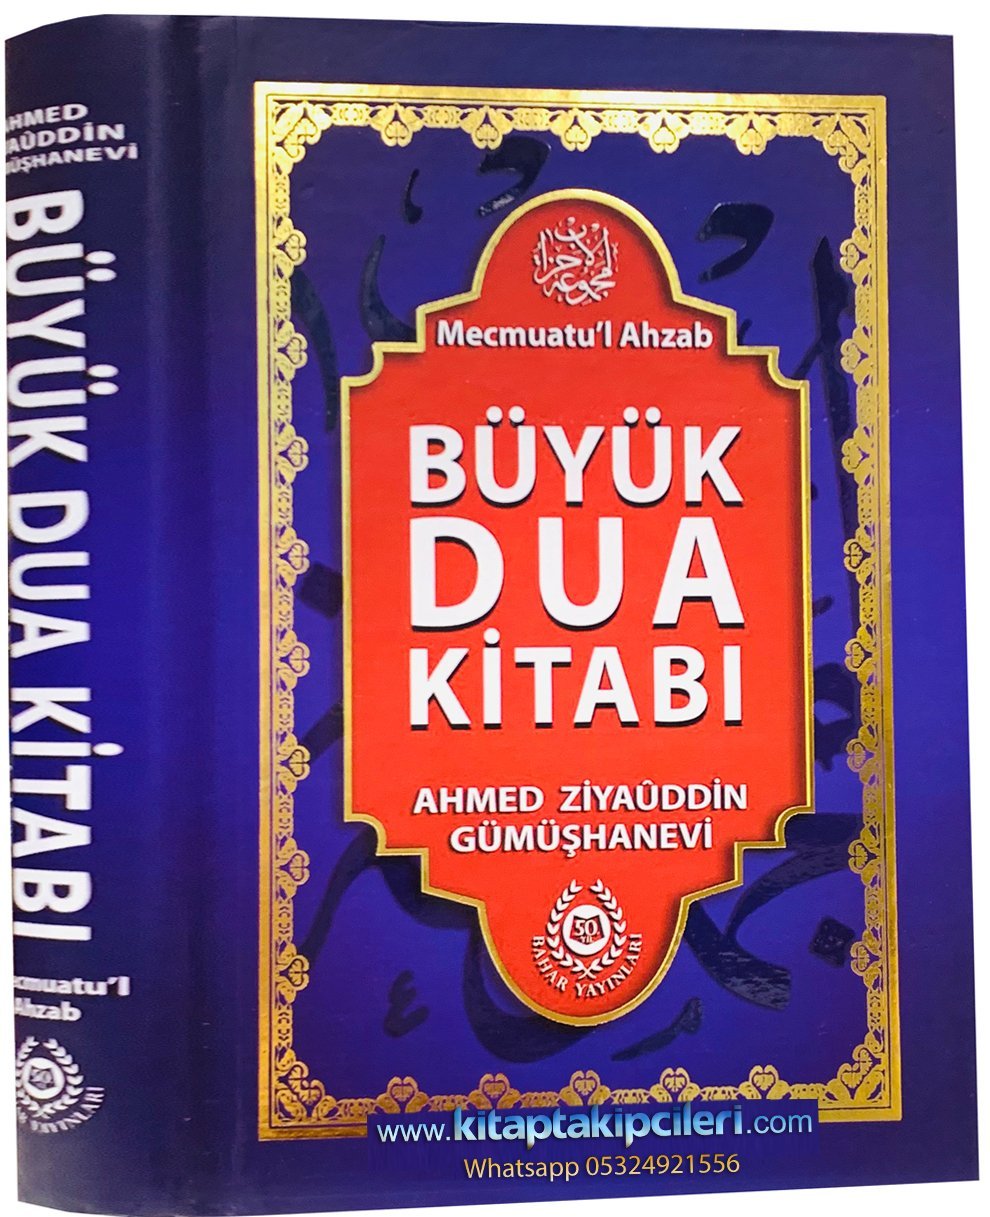 Mecmuatül Ahzab Büyük Dua Kitabı, Ahmet Ziyaeddin Gümüşhanevi, Türkçe Arapça, 560 Sayfa, Şamua Kağıt